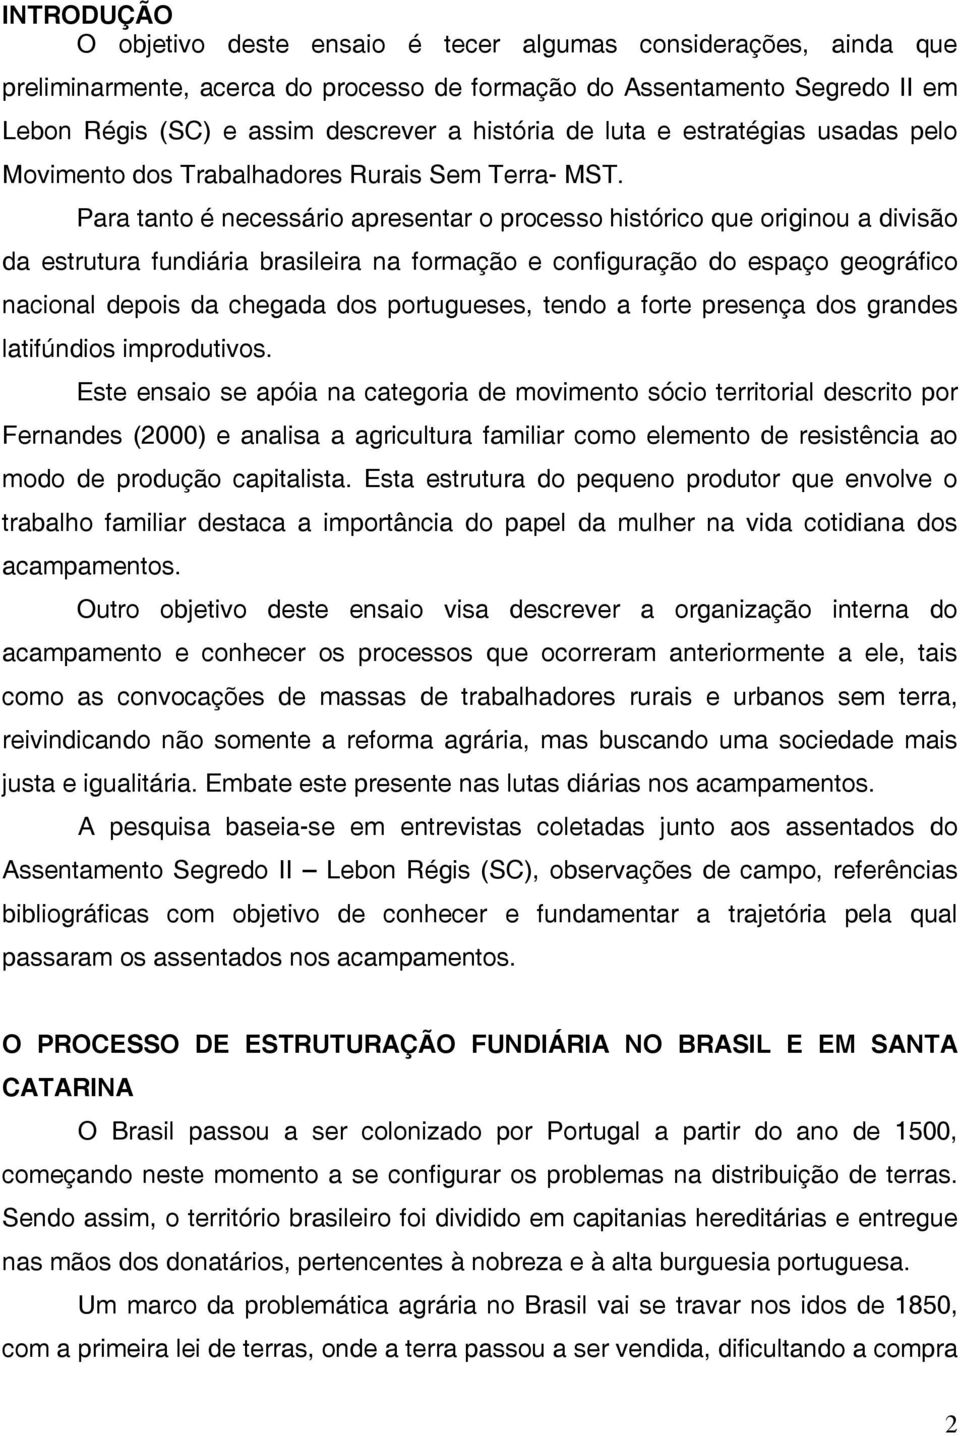 Para tanto é necessário apresentar o processo histórico que originou a divisão da estrutura fundiária brasileira na formação e configuração do espaço geográfico nacional depois da chegada dos